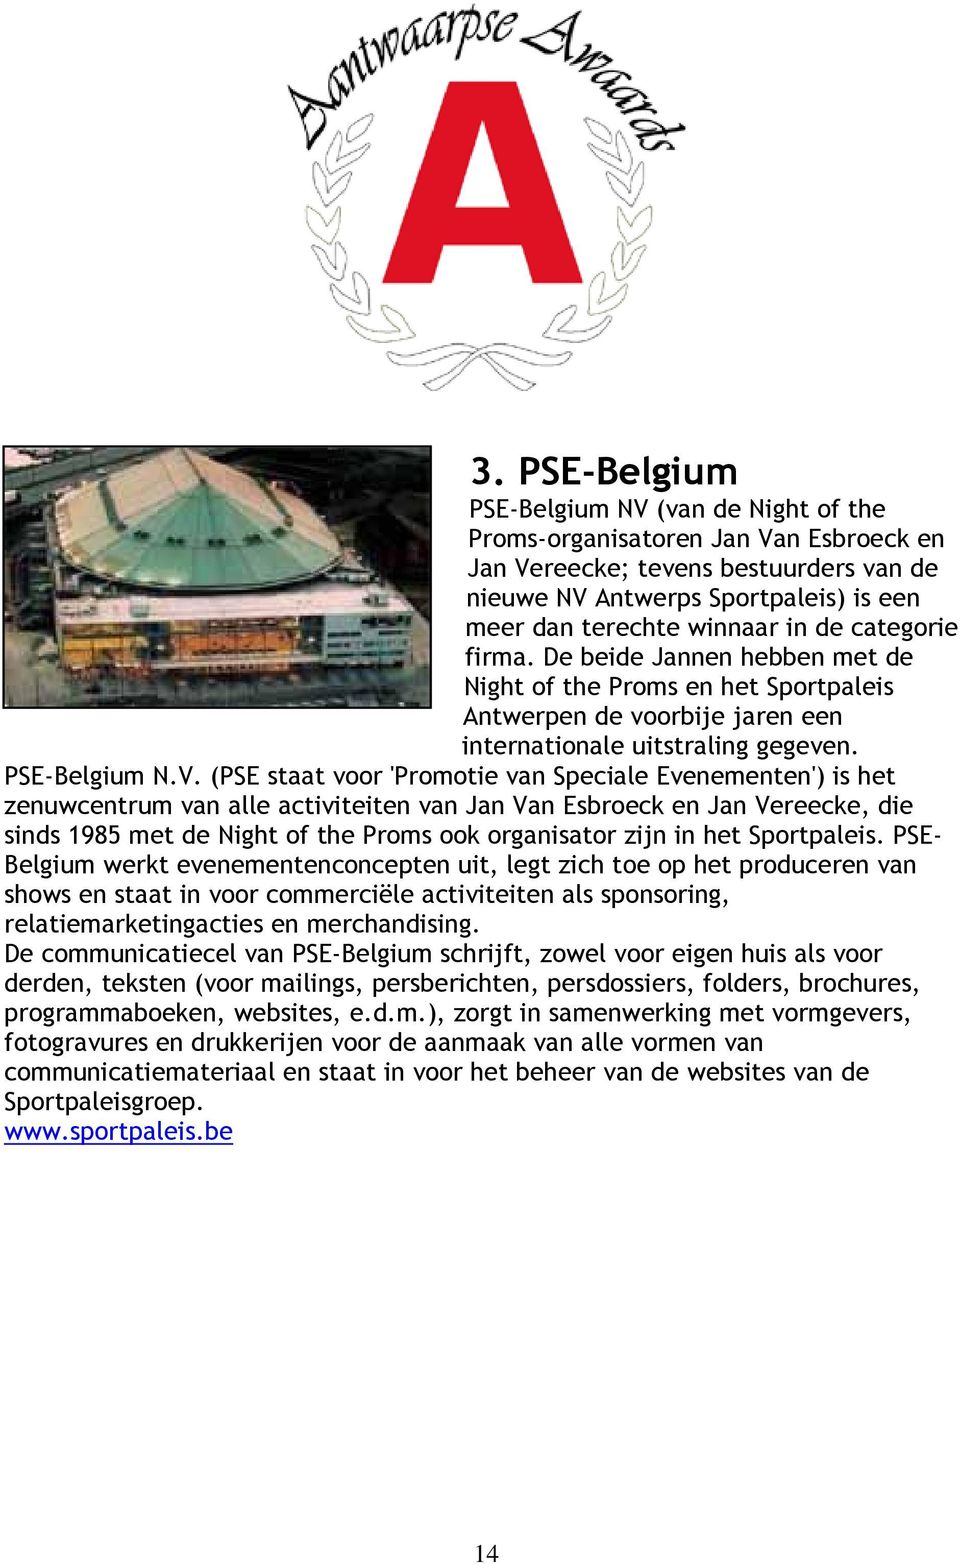 (PSE staat voor 'Promotie van Speciale Evenementen') is het zenuwcentrum van alle activiteiten van Jan Van Esbroeck en Jan Vereecke, die sinds 1985 met de Night of the Proms ook organisator zijn in